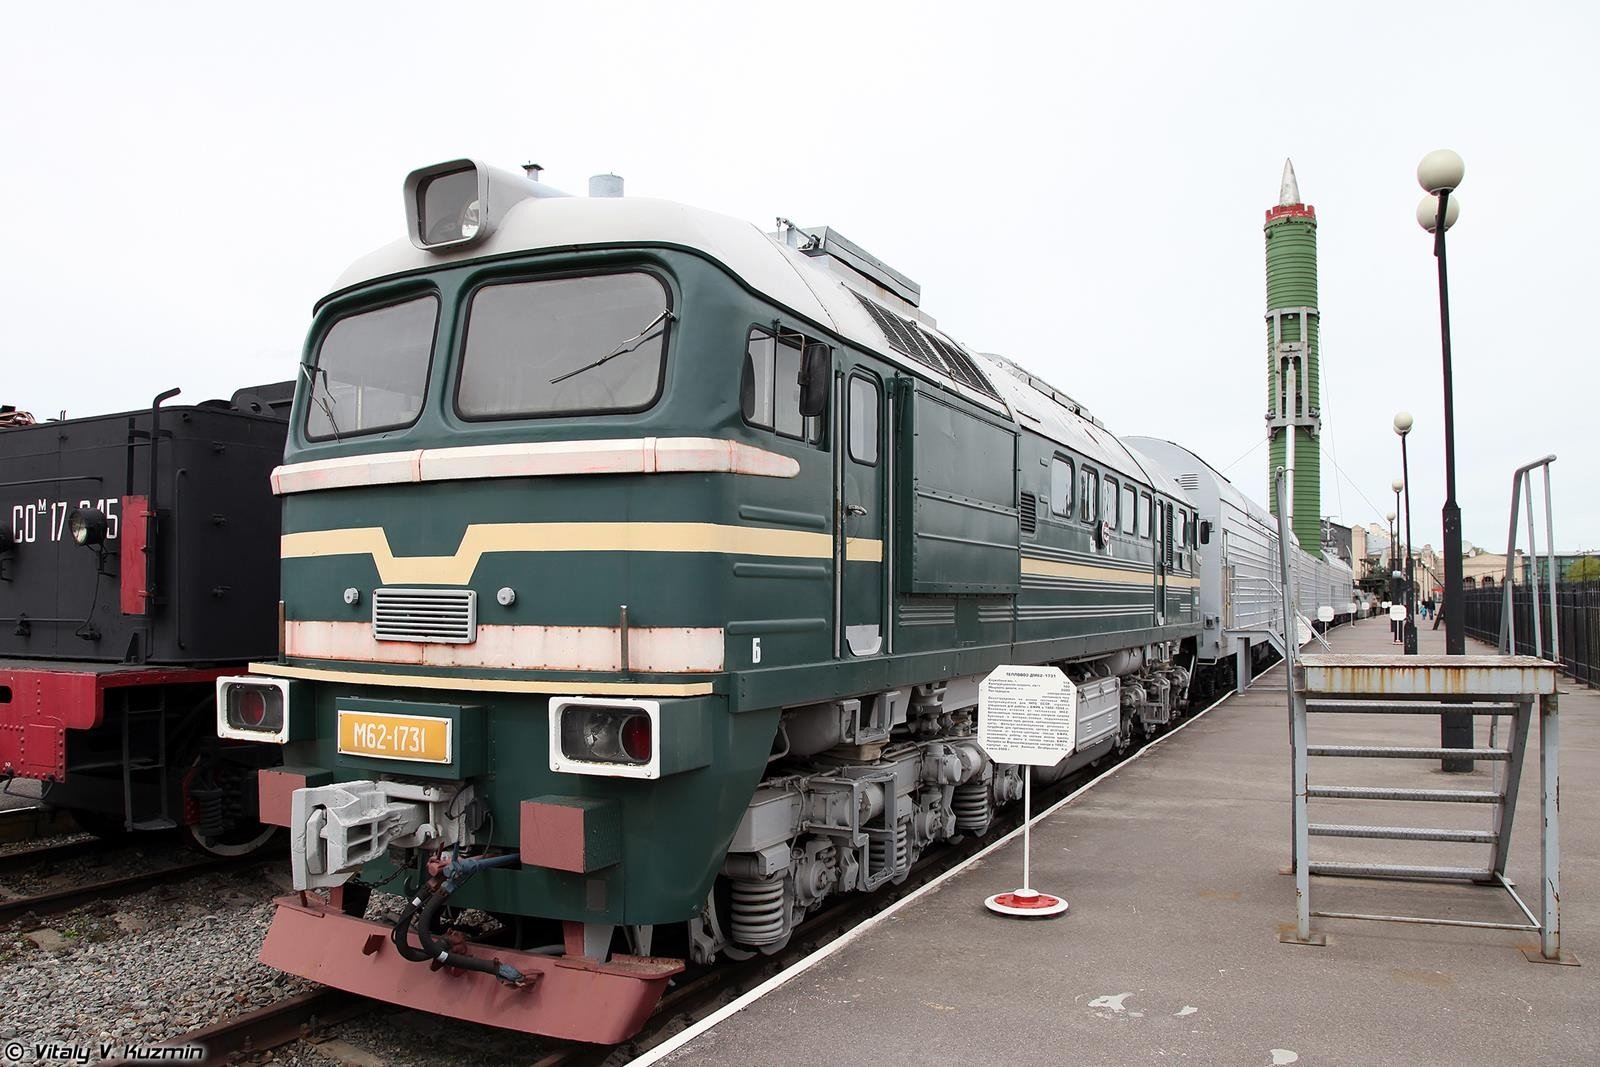 Rosja chce wystrzeliwać pociski balistyczne z wagonów kolejowych, pociski balistyczne z wagonów kolejowych, wagony kolejowe, pociski w wagonach